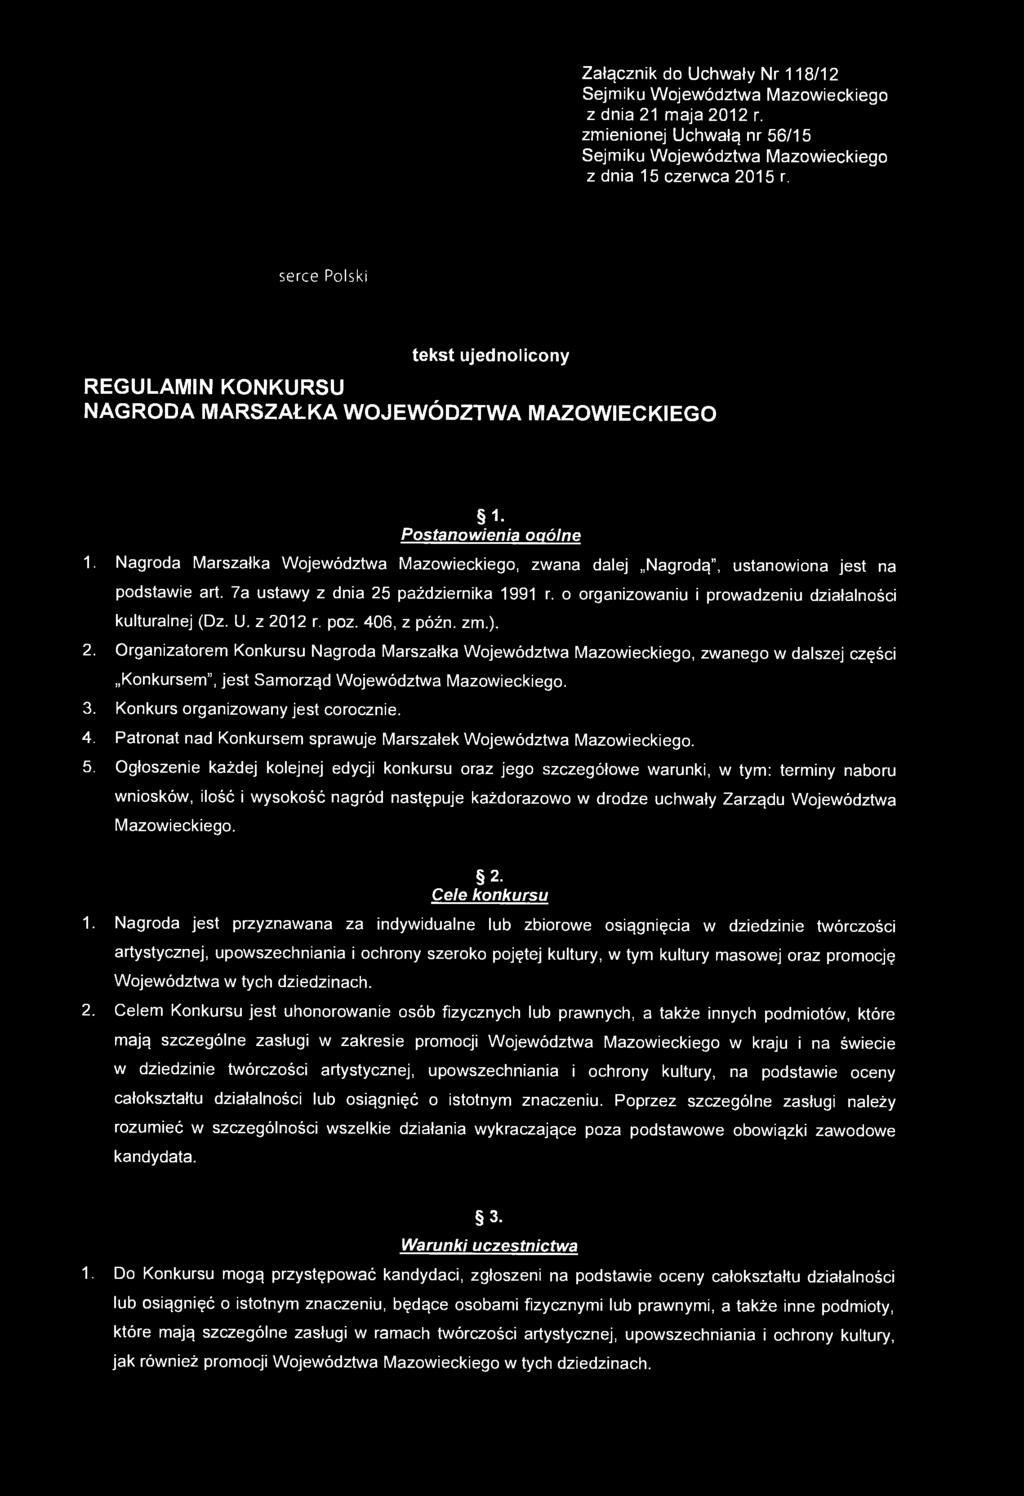 Nagroda Marszałka Województwa Mazowieckiego, zwana dalej Nagrodą", ustanowiona jest na podstawie art. 7a ustawy z dnia 25 października 1991 r.